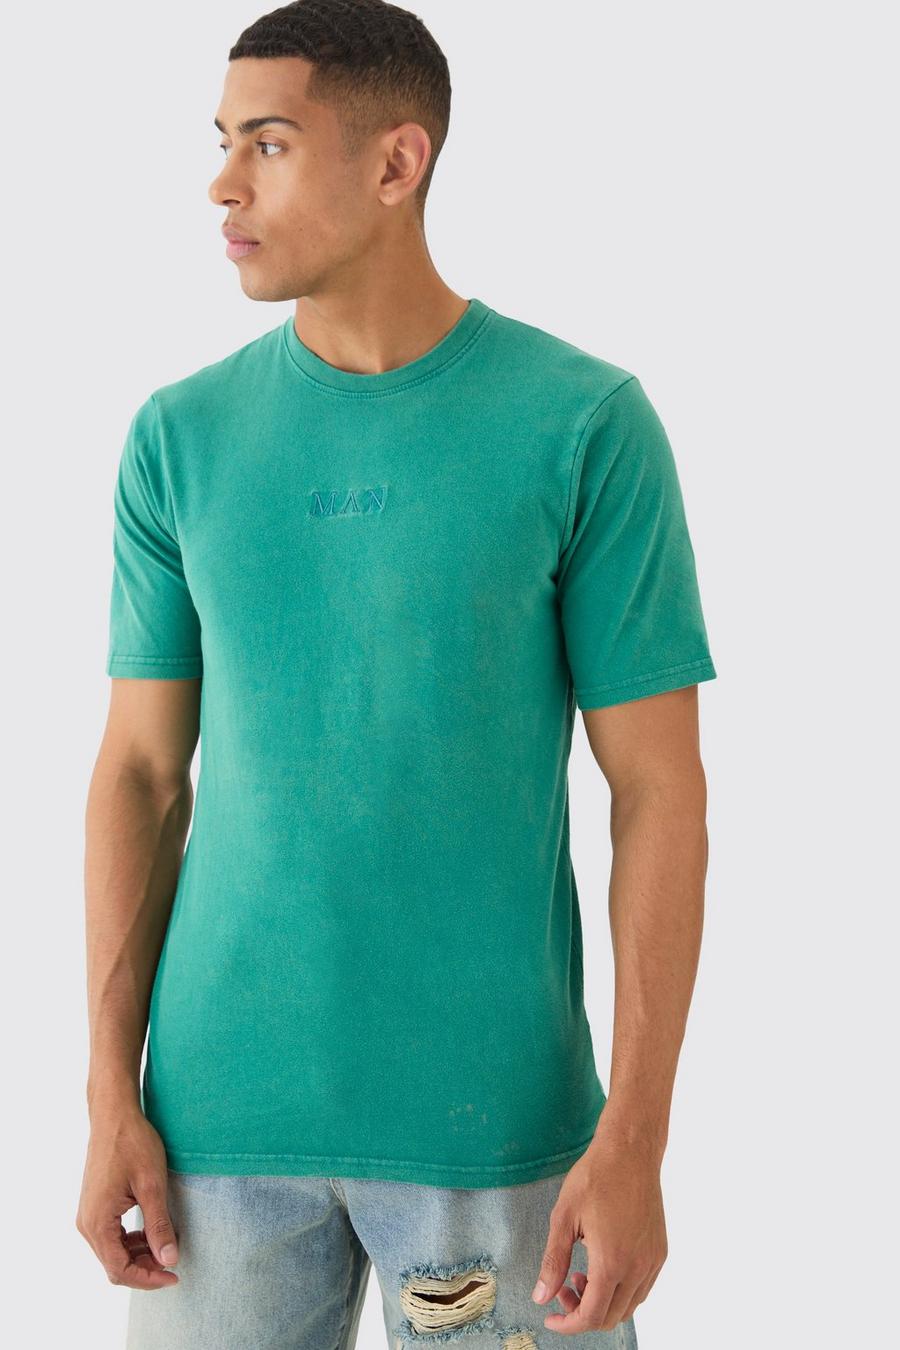 Teal Man Gebleekt T-Shirt Met Crewneck En Tekst